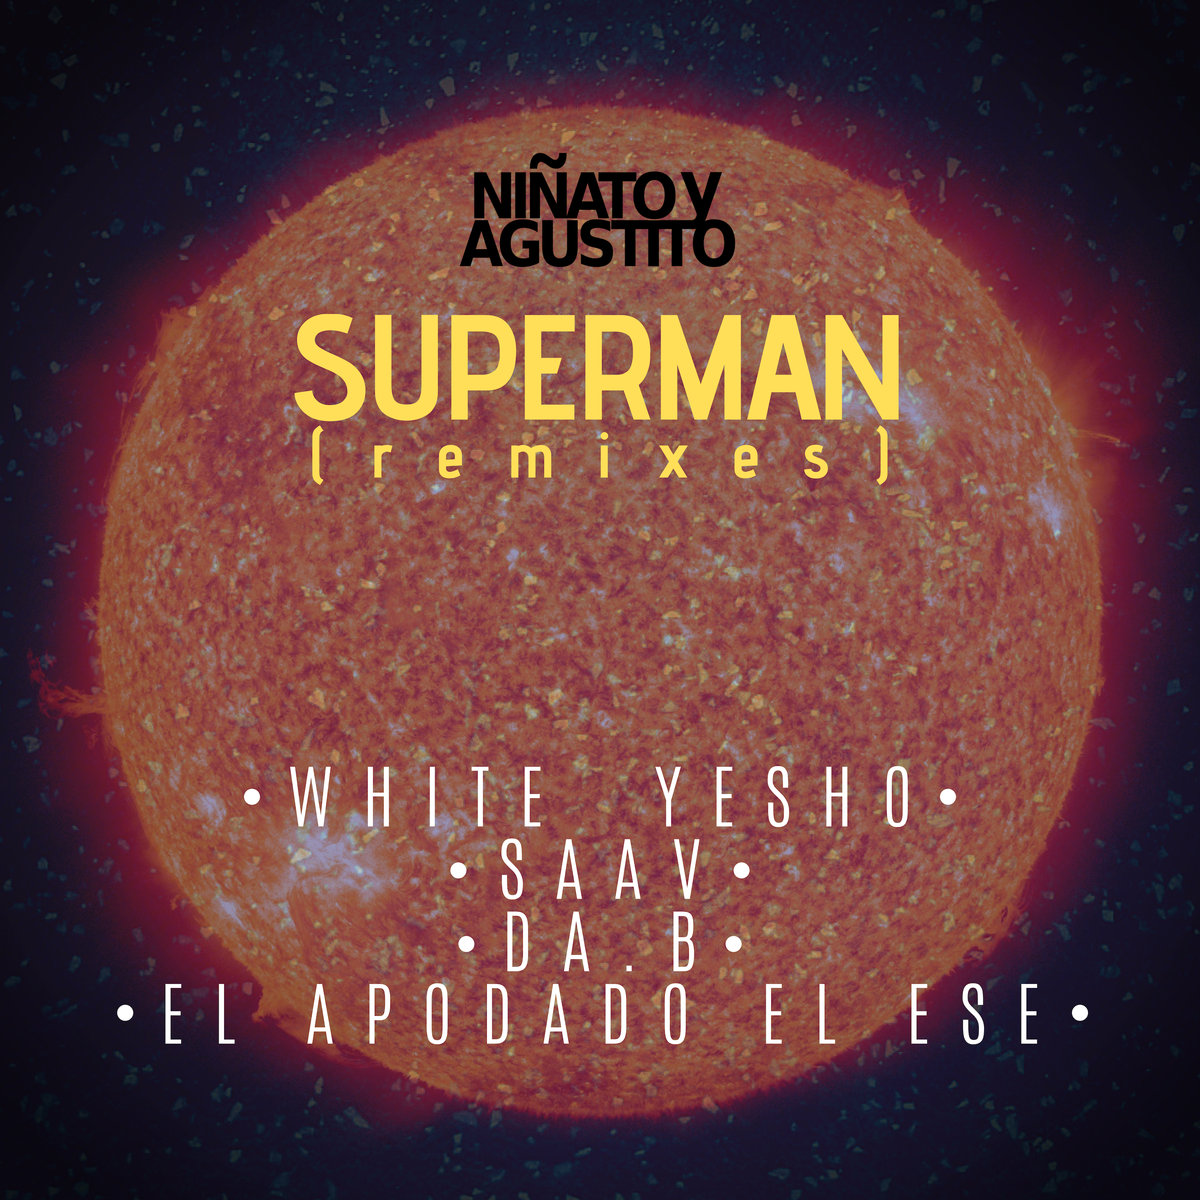 Superman__remixes__ni_ato_y_agustito